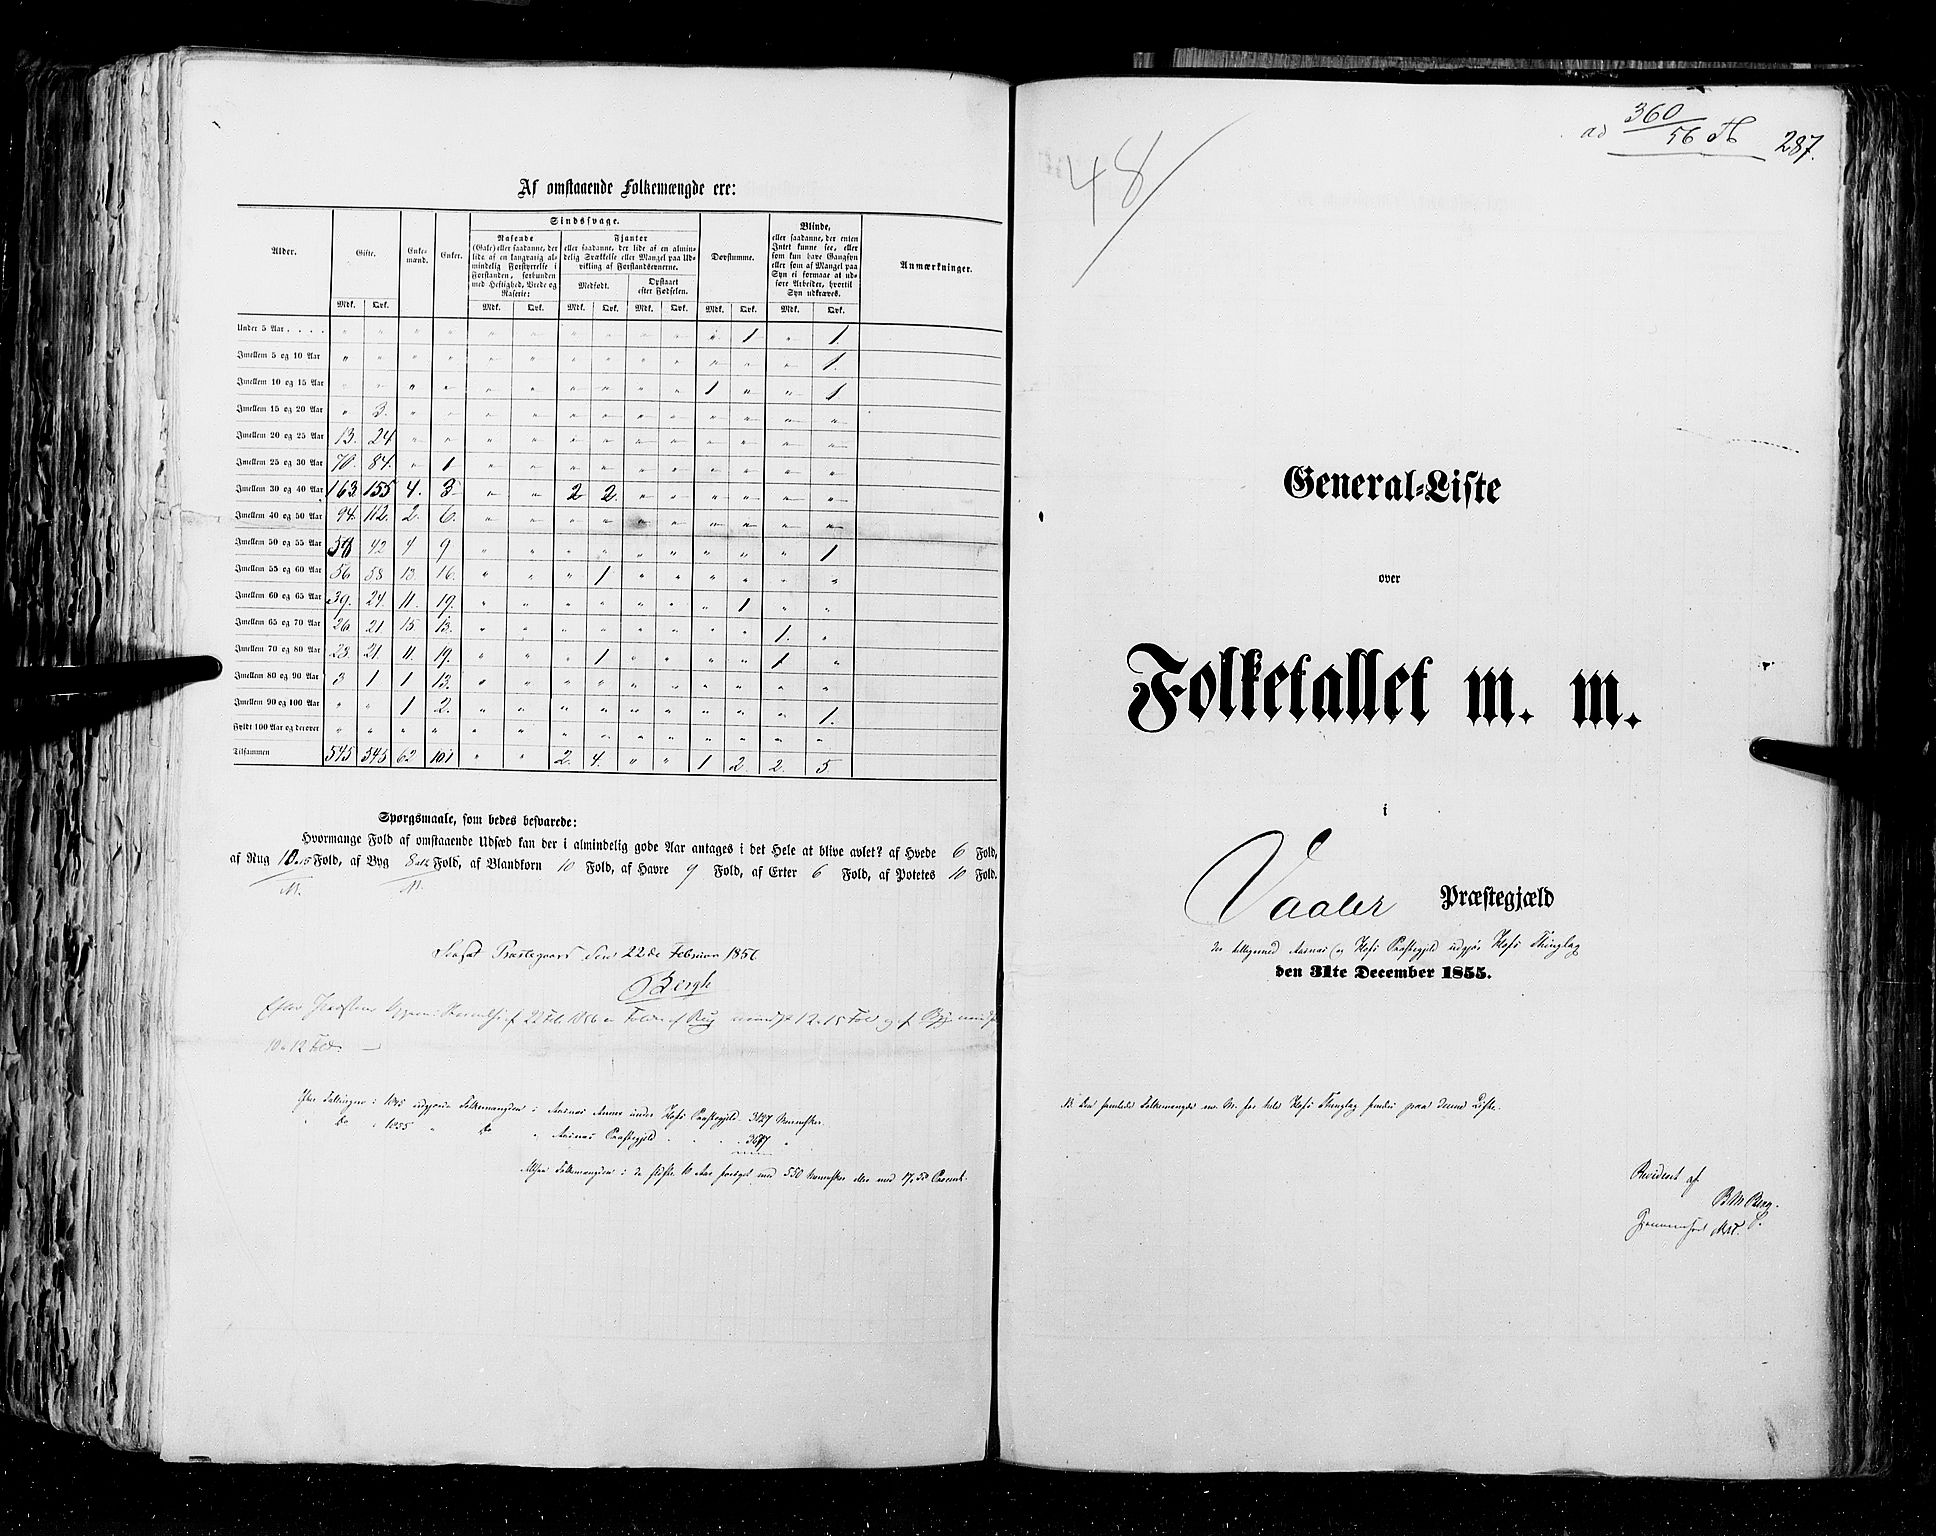 RA, Folketellingen 1855, bind 1: Akershus amt, Smålenenes amt og Hedemarken amt, 1855, s. 287